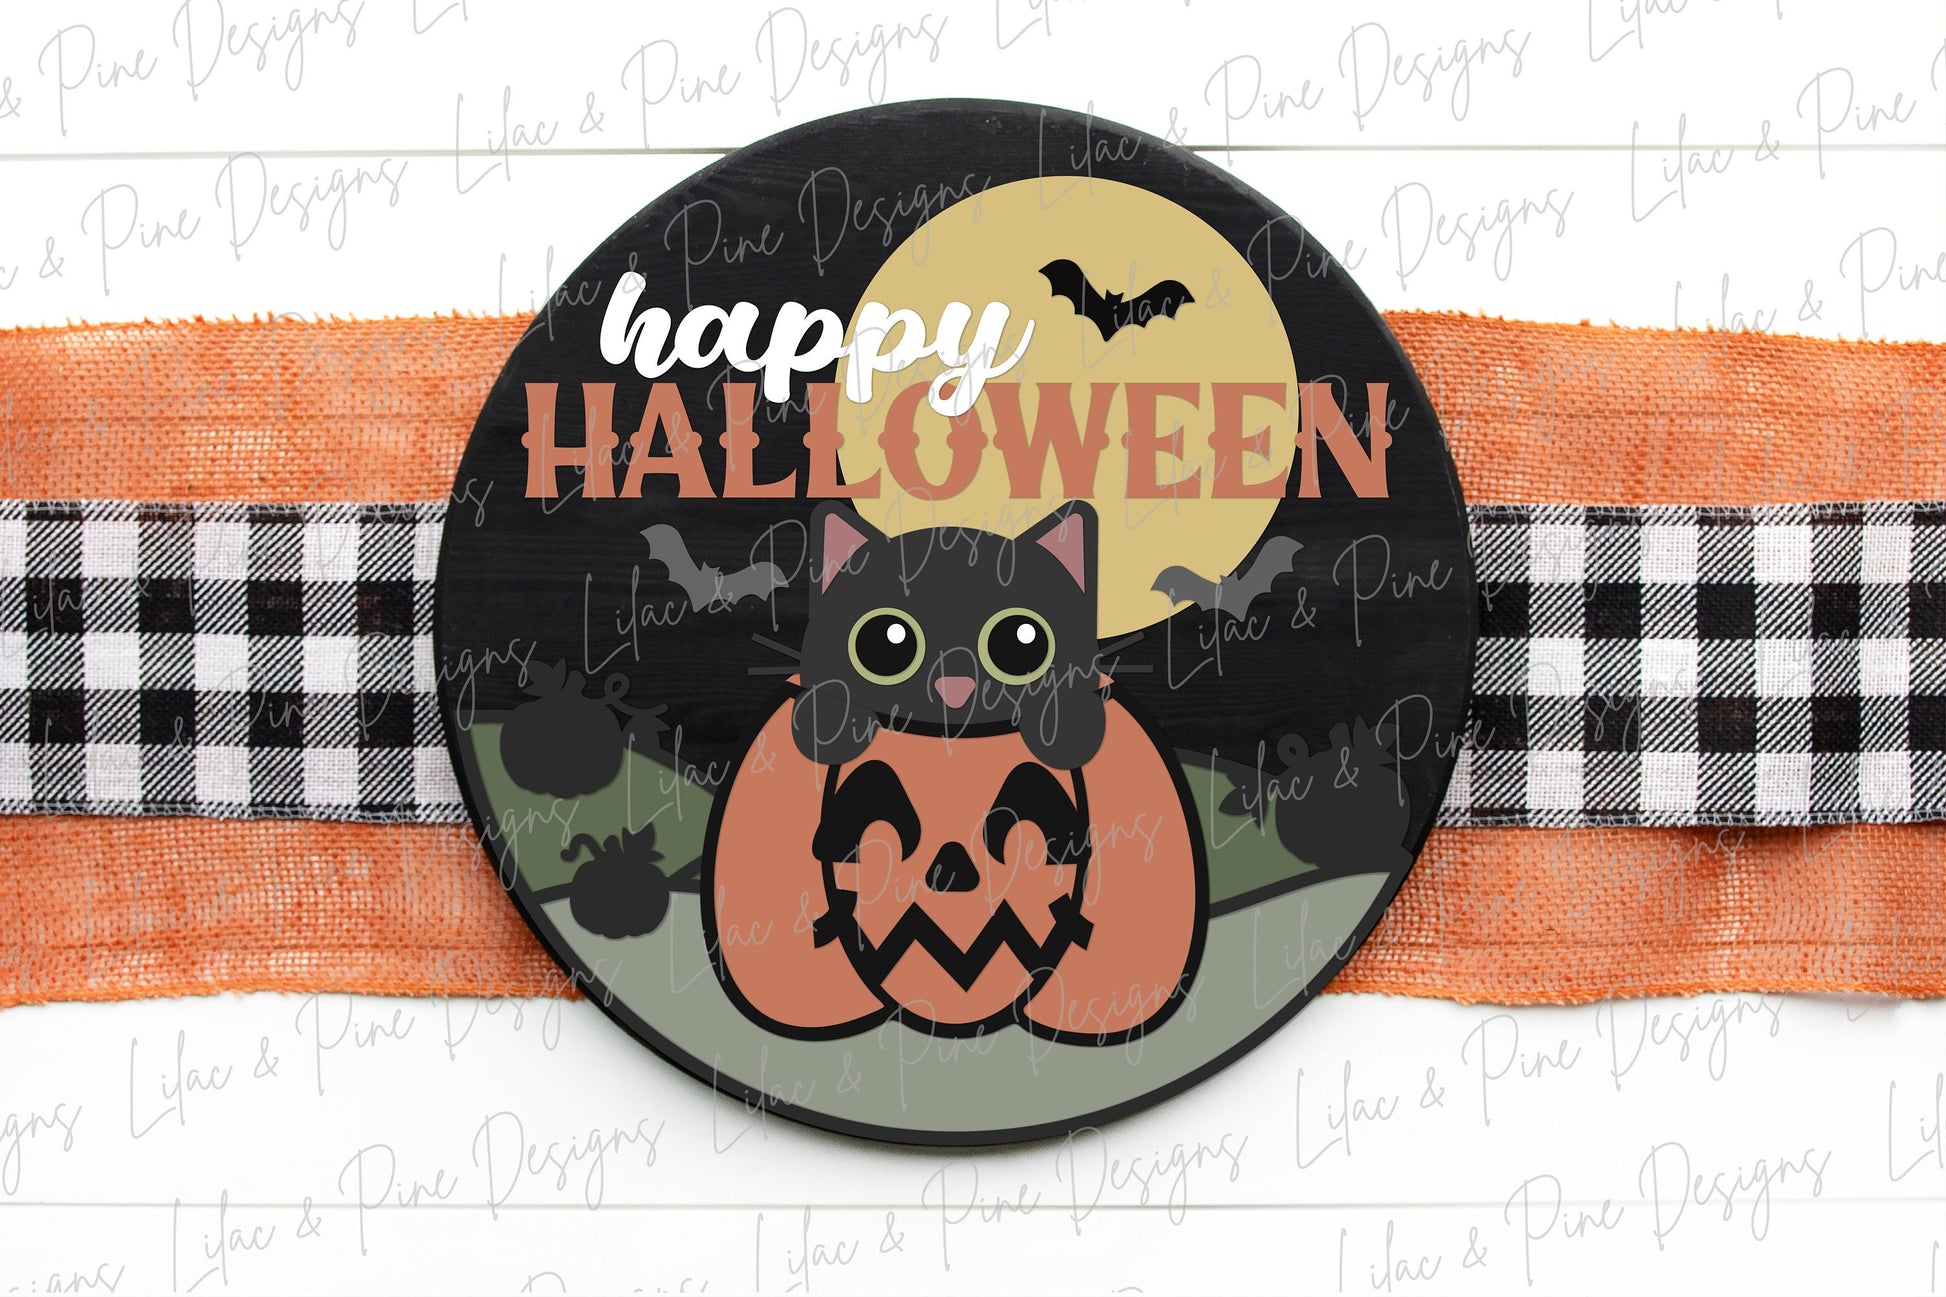 Halloween sign, Happy Halloween SVG, Halloween door hanger SVG, Black Cat welcome sign, cat in pumpkin svg, Glowforge Svg, laser cut file